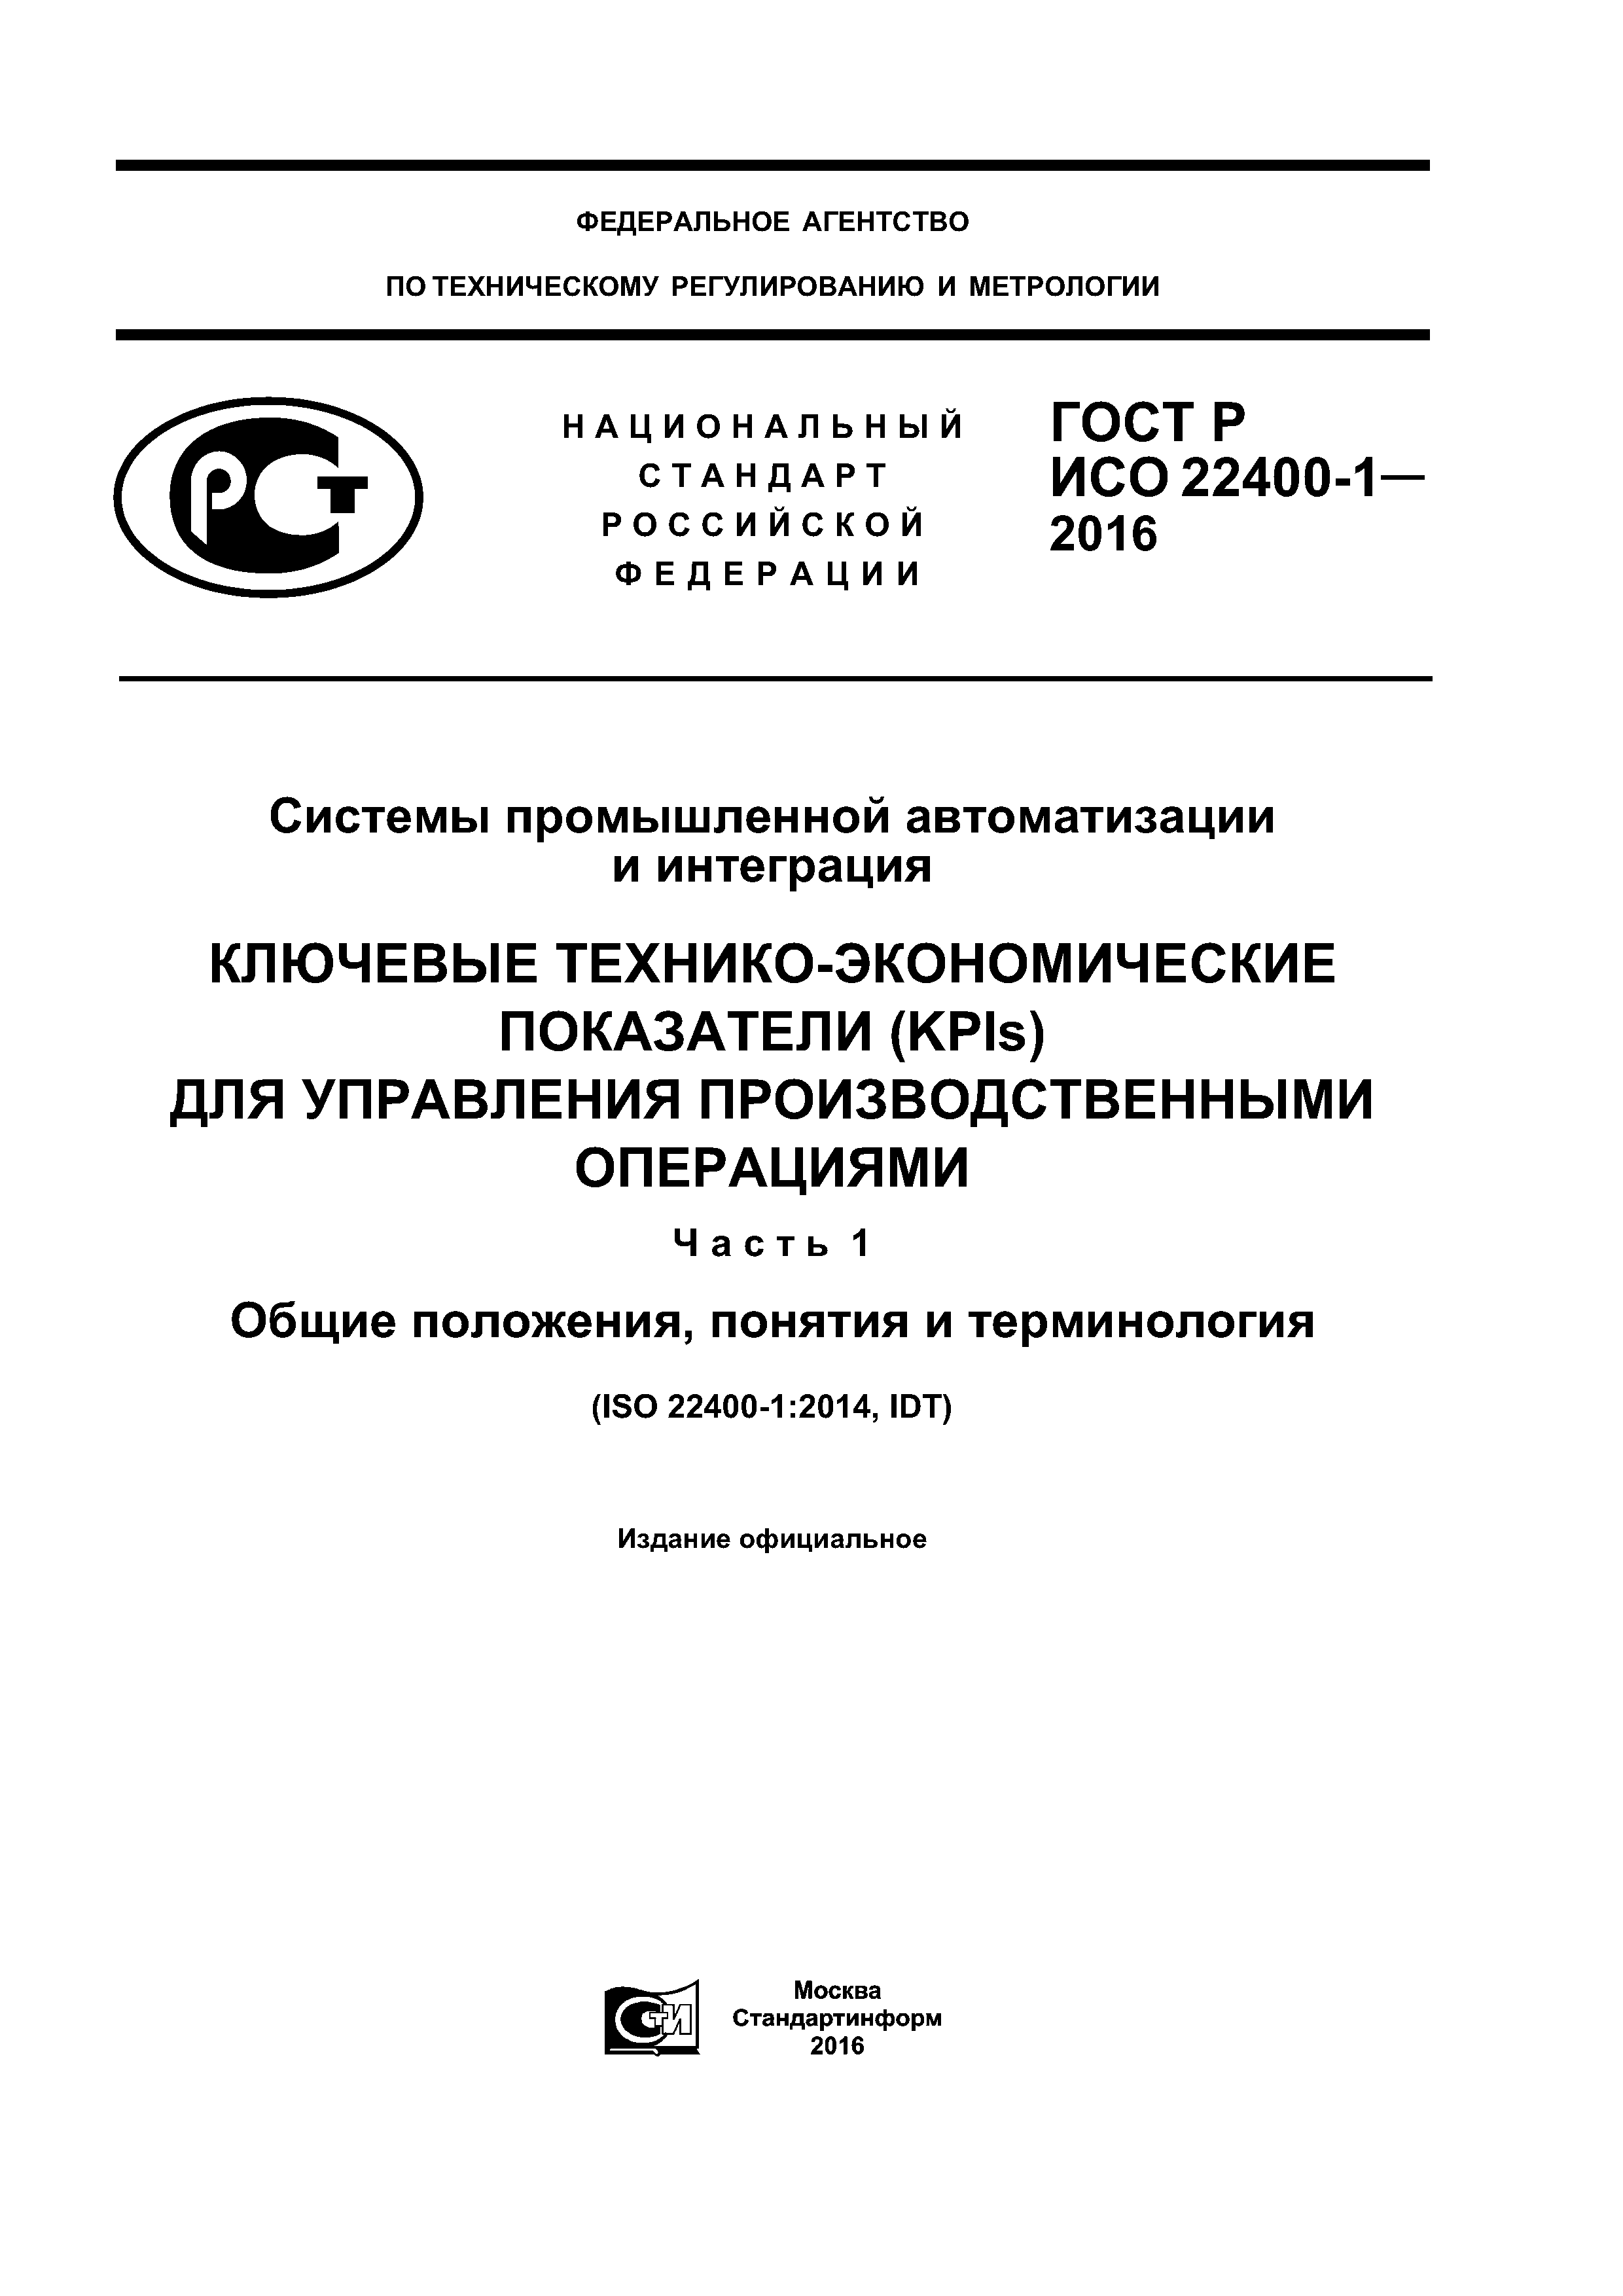 ГОСТ Р ИСО 22400-1-2016